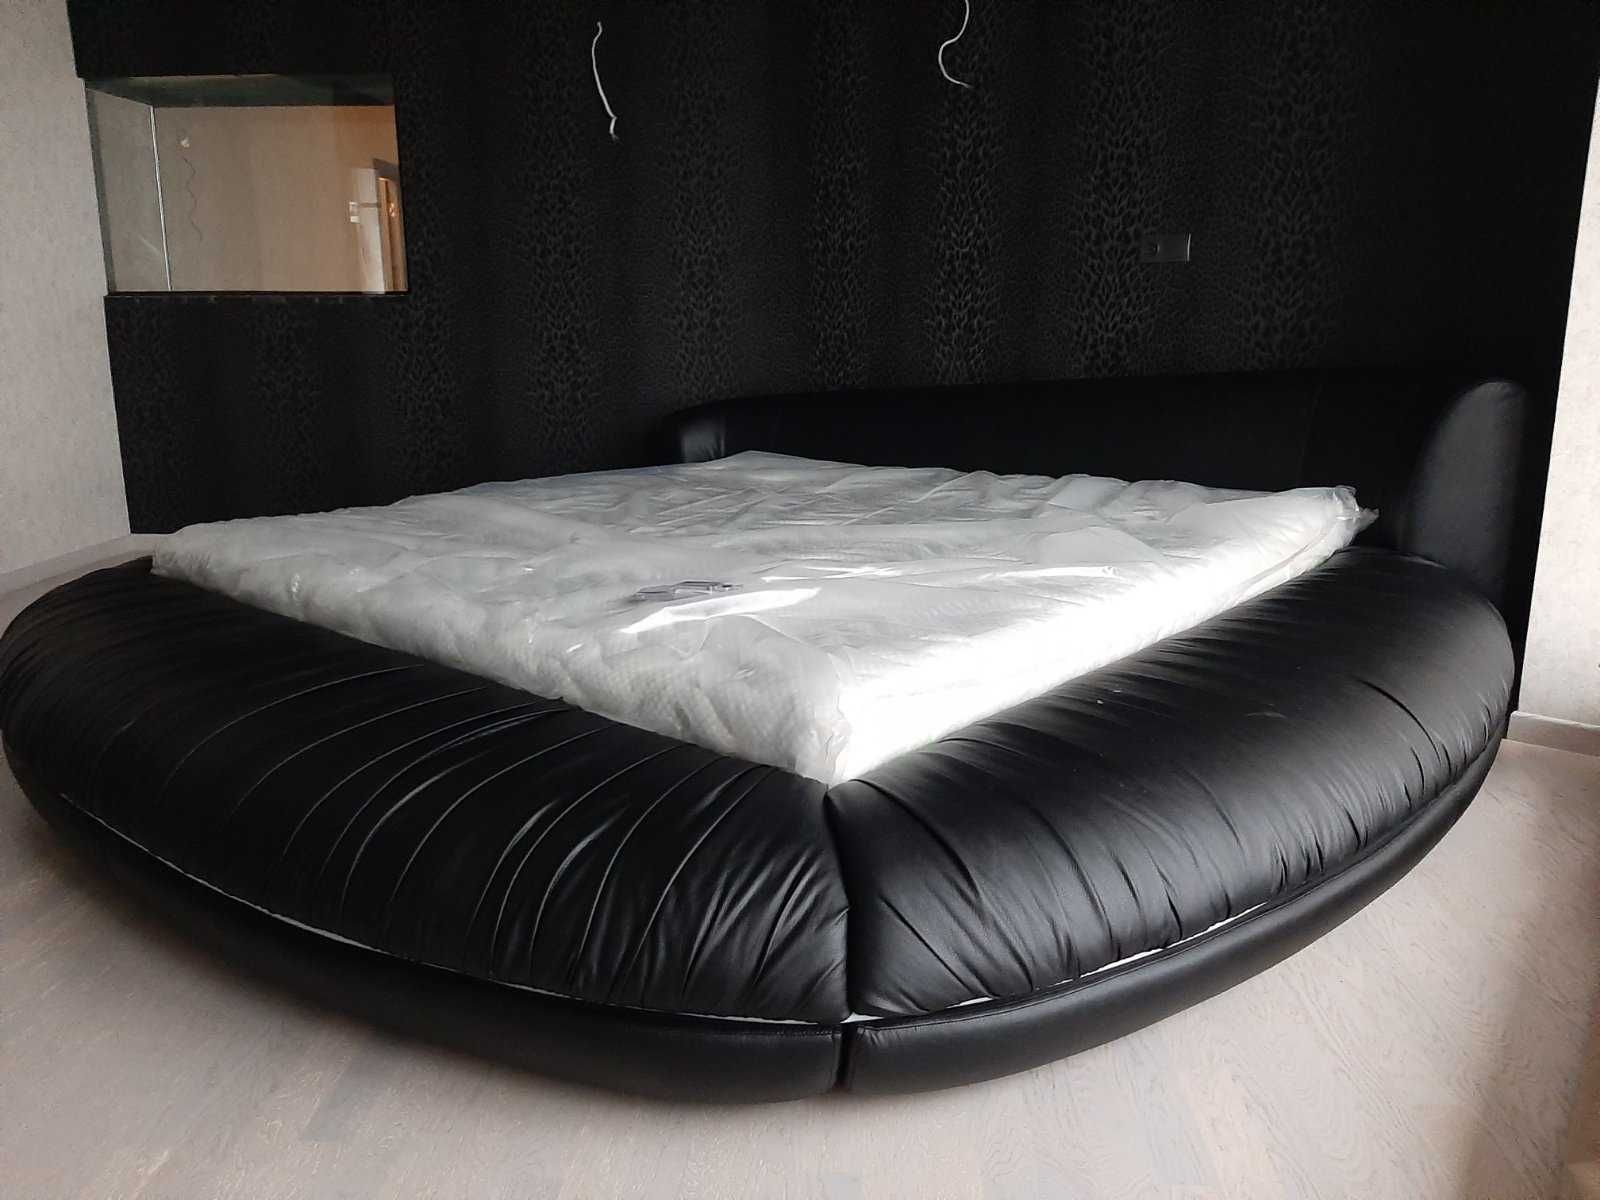 Кругле ліжко ARIS Carolean / Шикарная Круглая кровать с подсветкой!